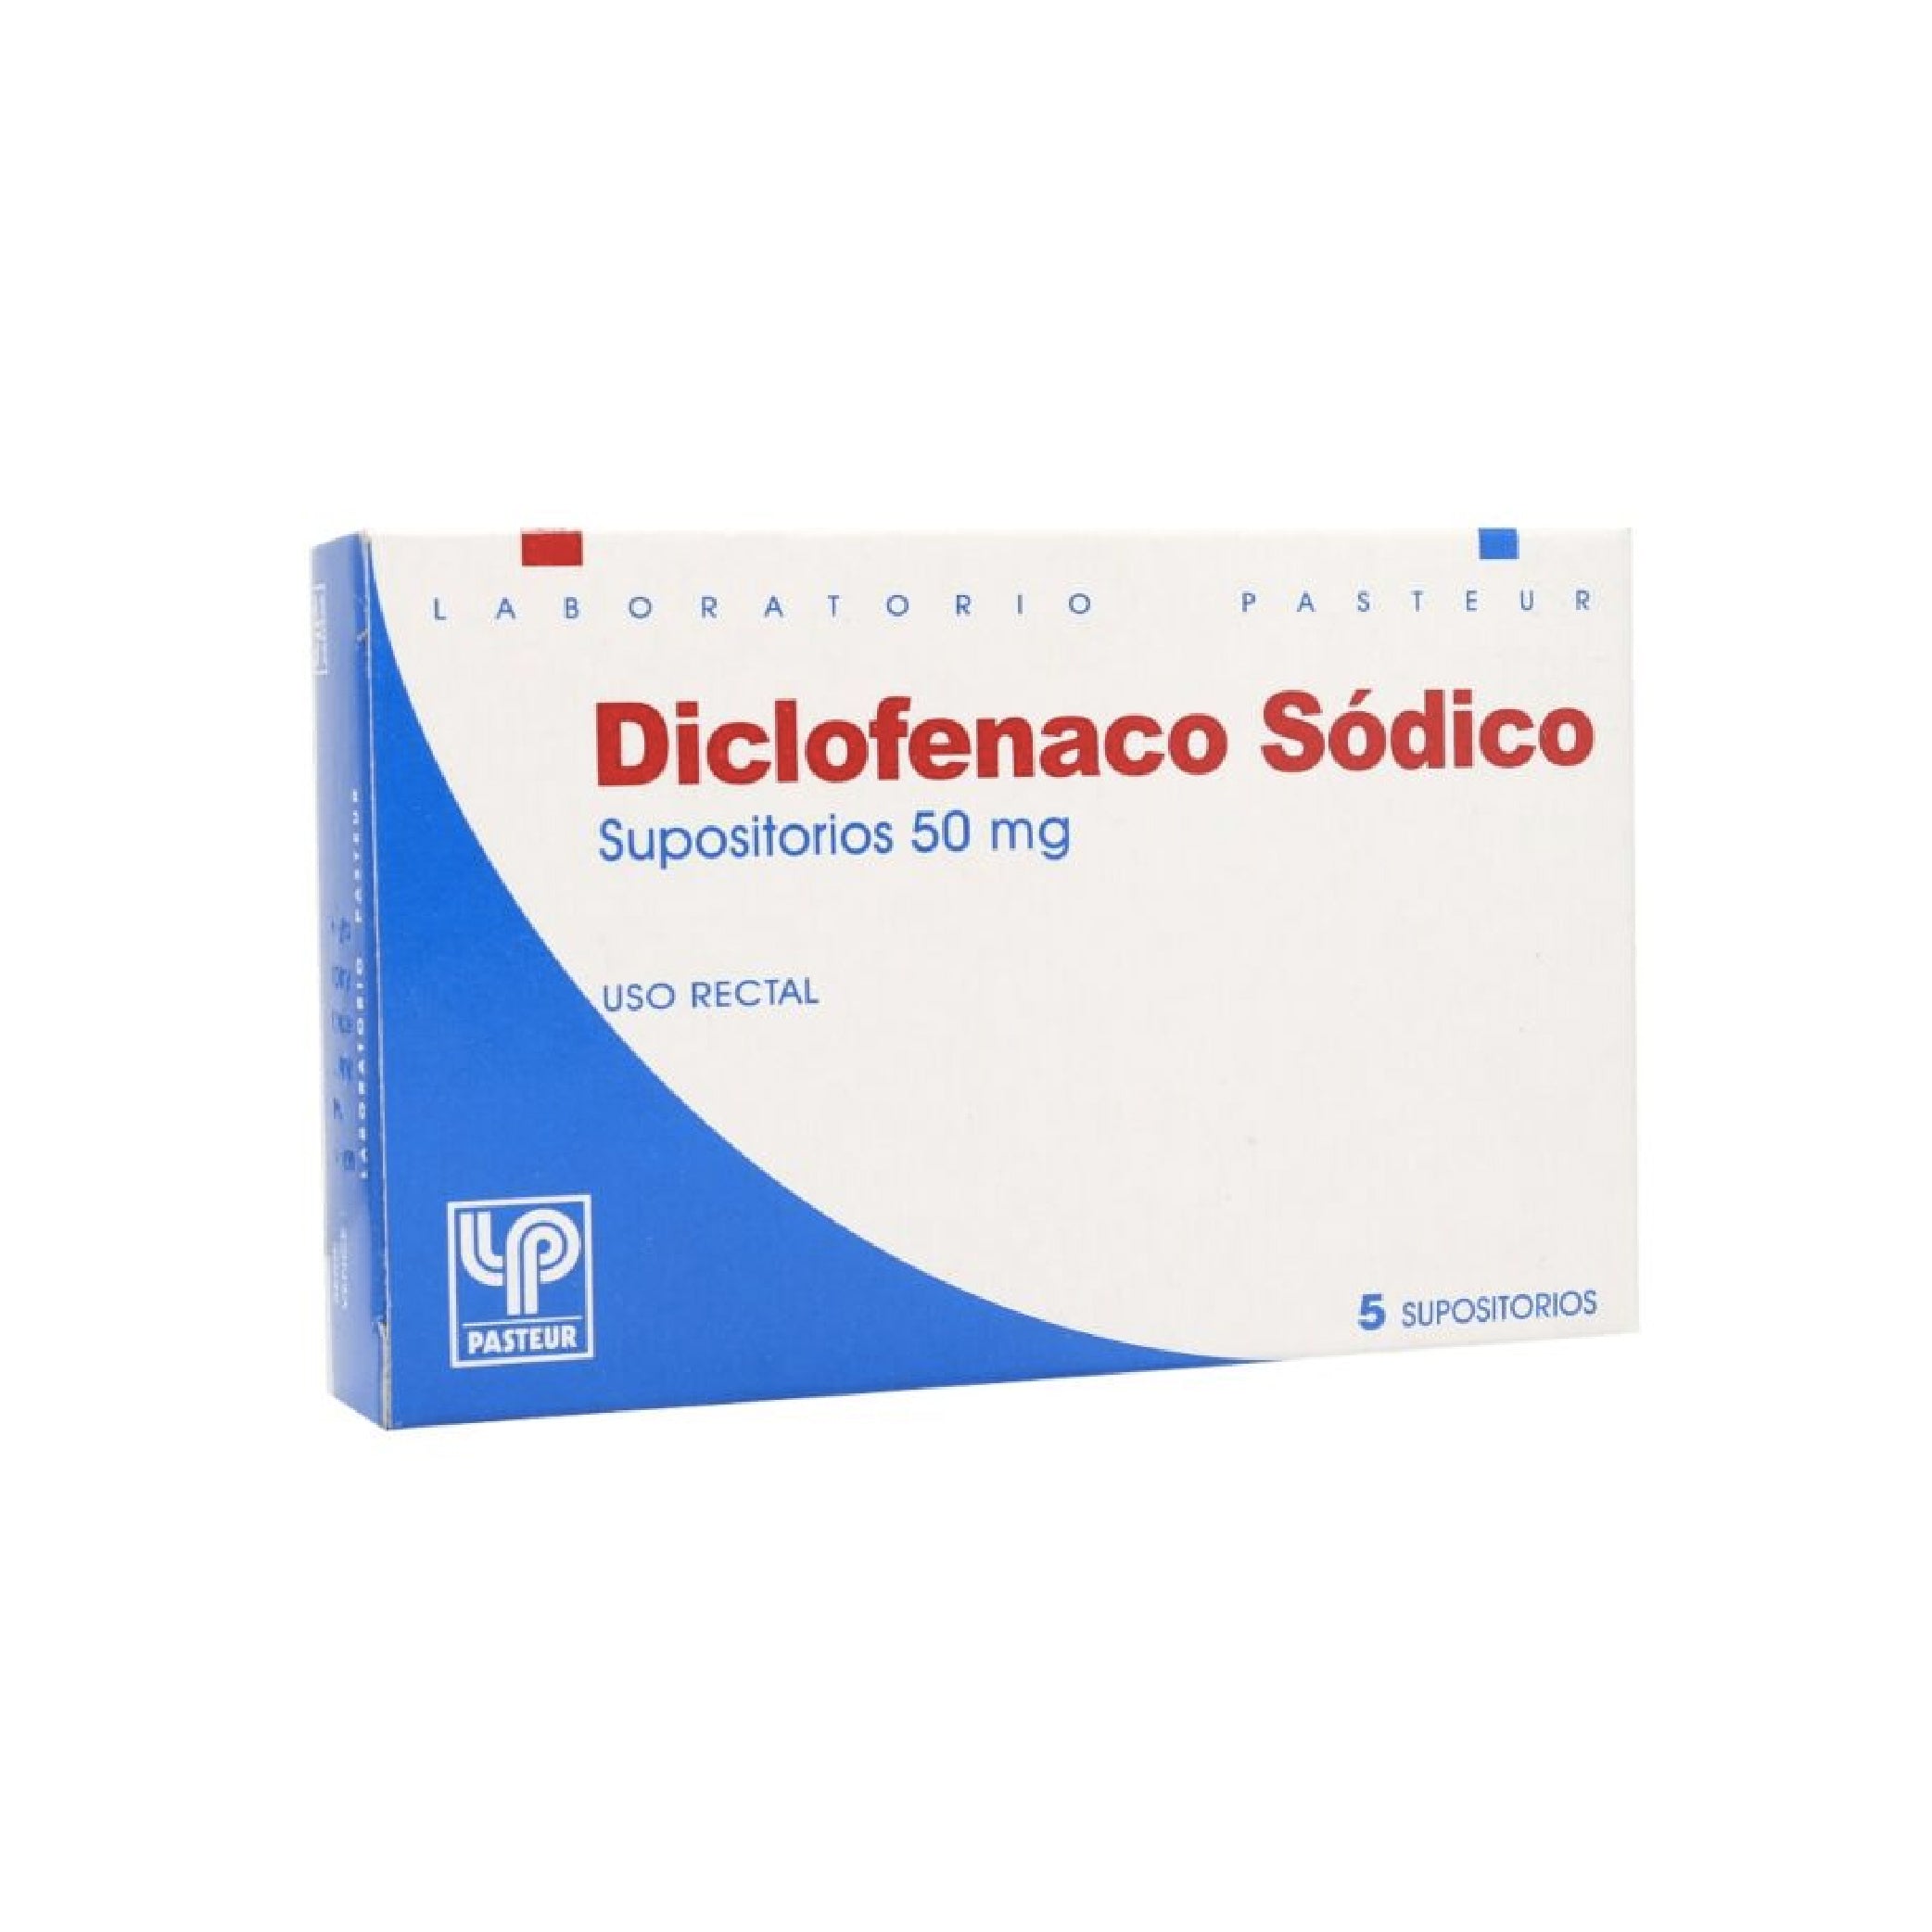 DICLOFENACO SODICO PASTEUR 50mg Sup. x 5